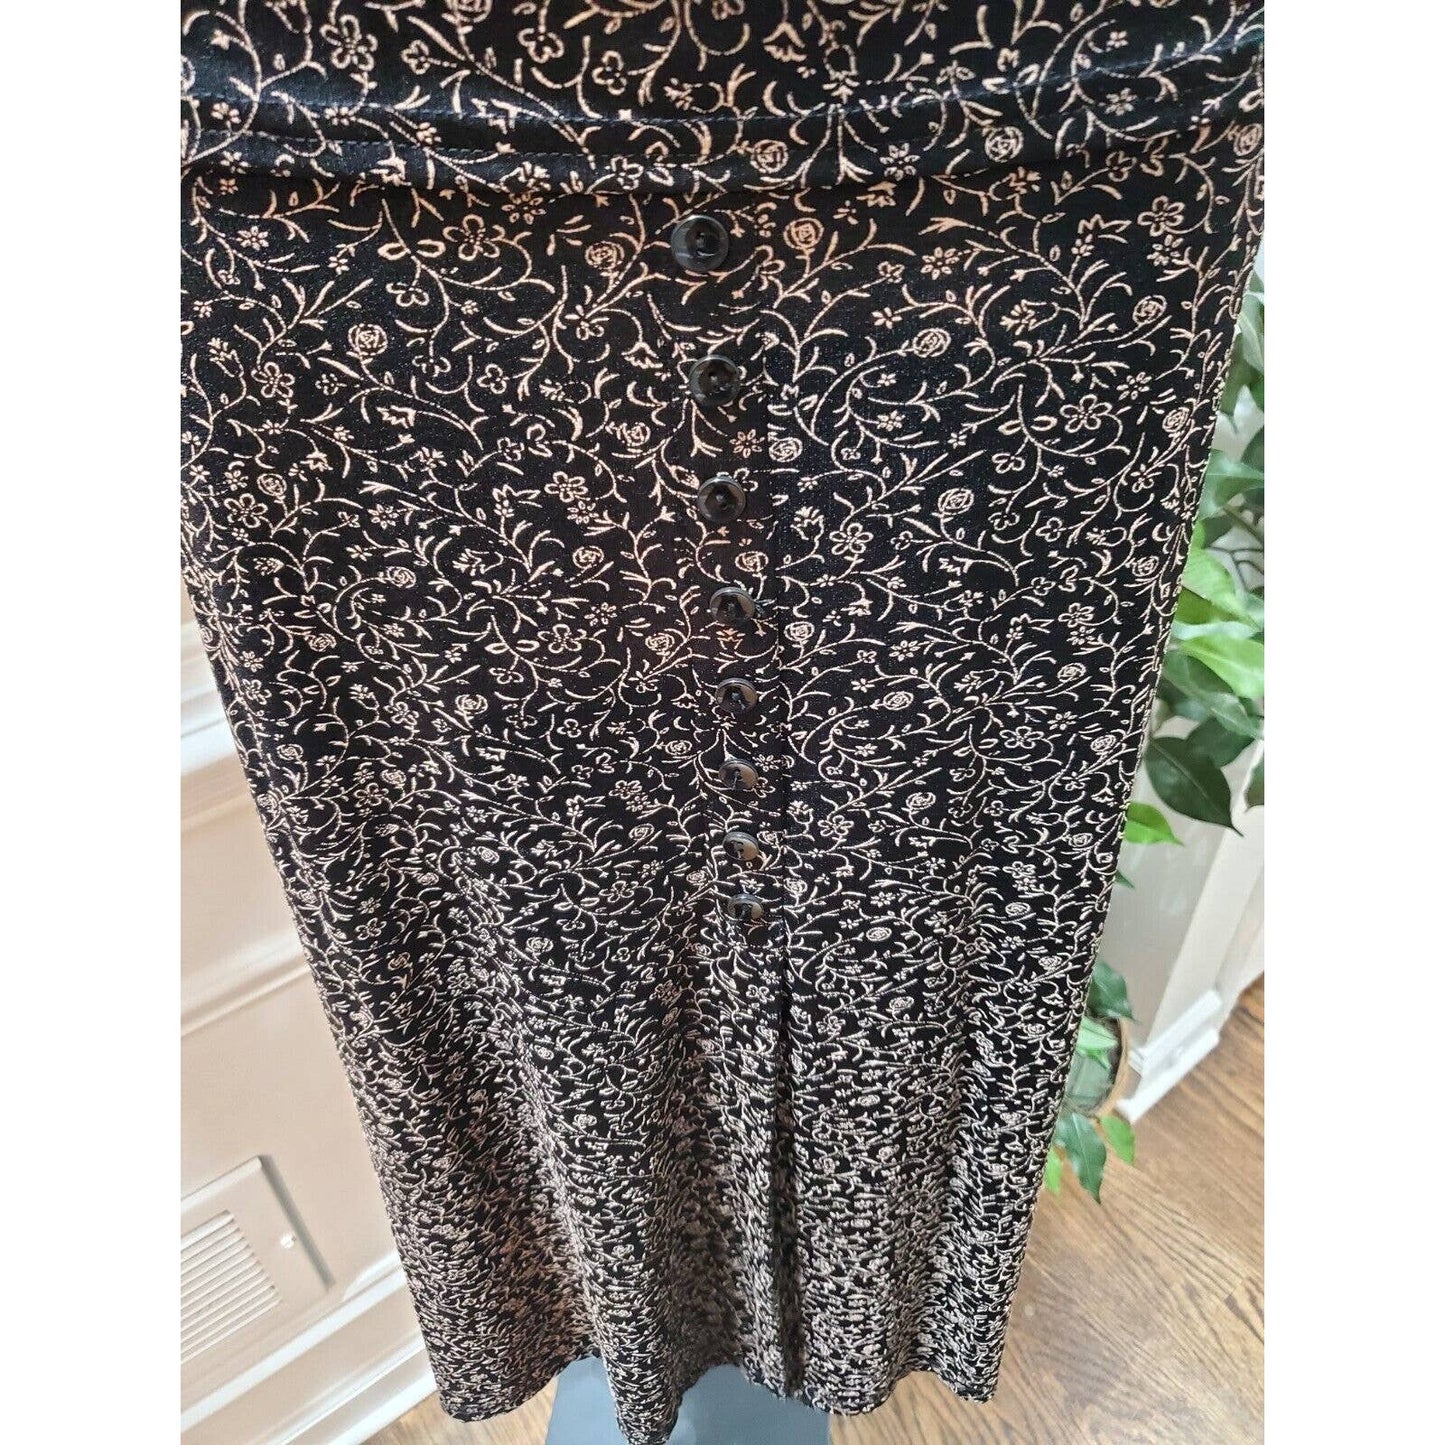 JM Collection Women Black Nylon Short Sleeve Blouse & Long Skirt 2 Pc's Suit XL